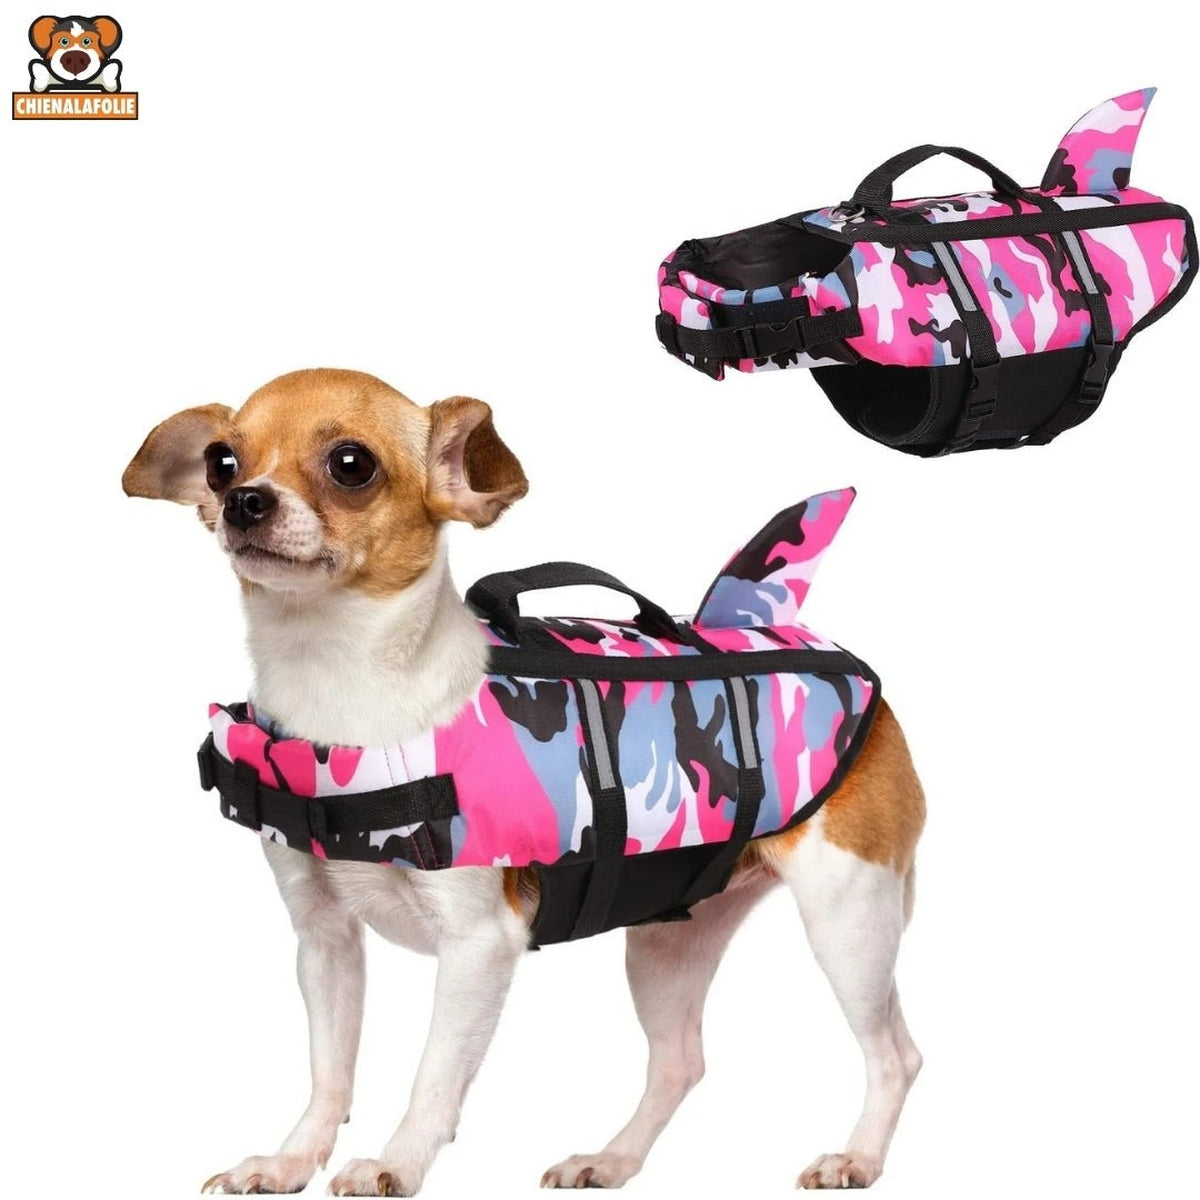 Gilet de sauvetage pour chien en camouflage - 14:1052#Camouflage Pink;5:100014066 - Gilets de sauvetage - Chienalafolie